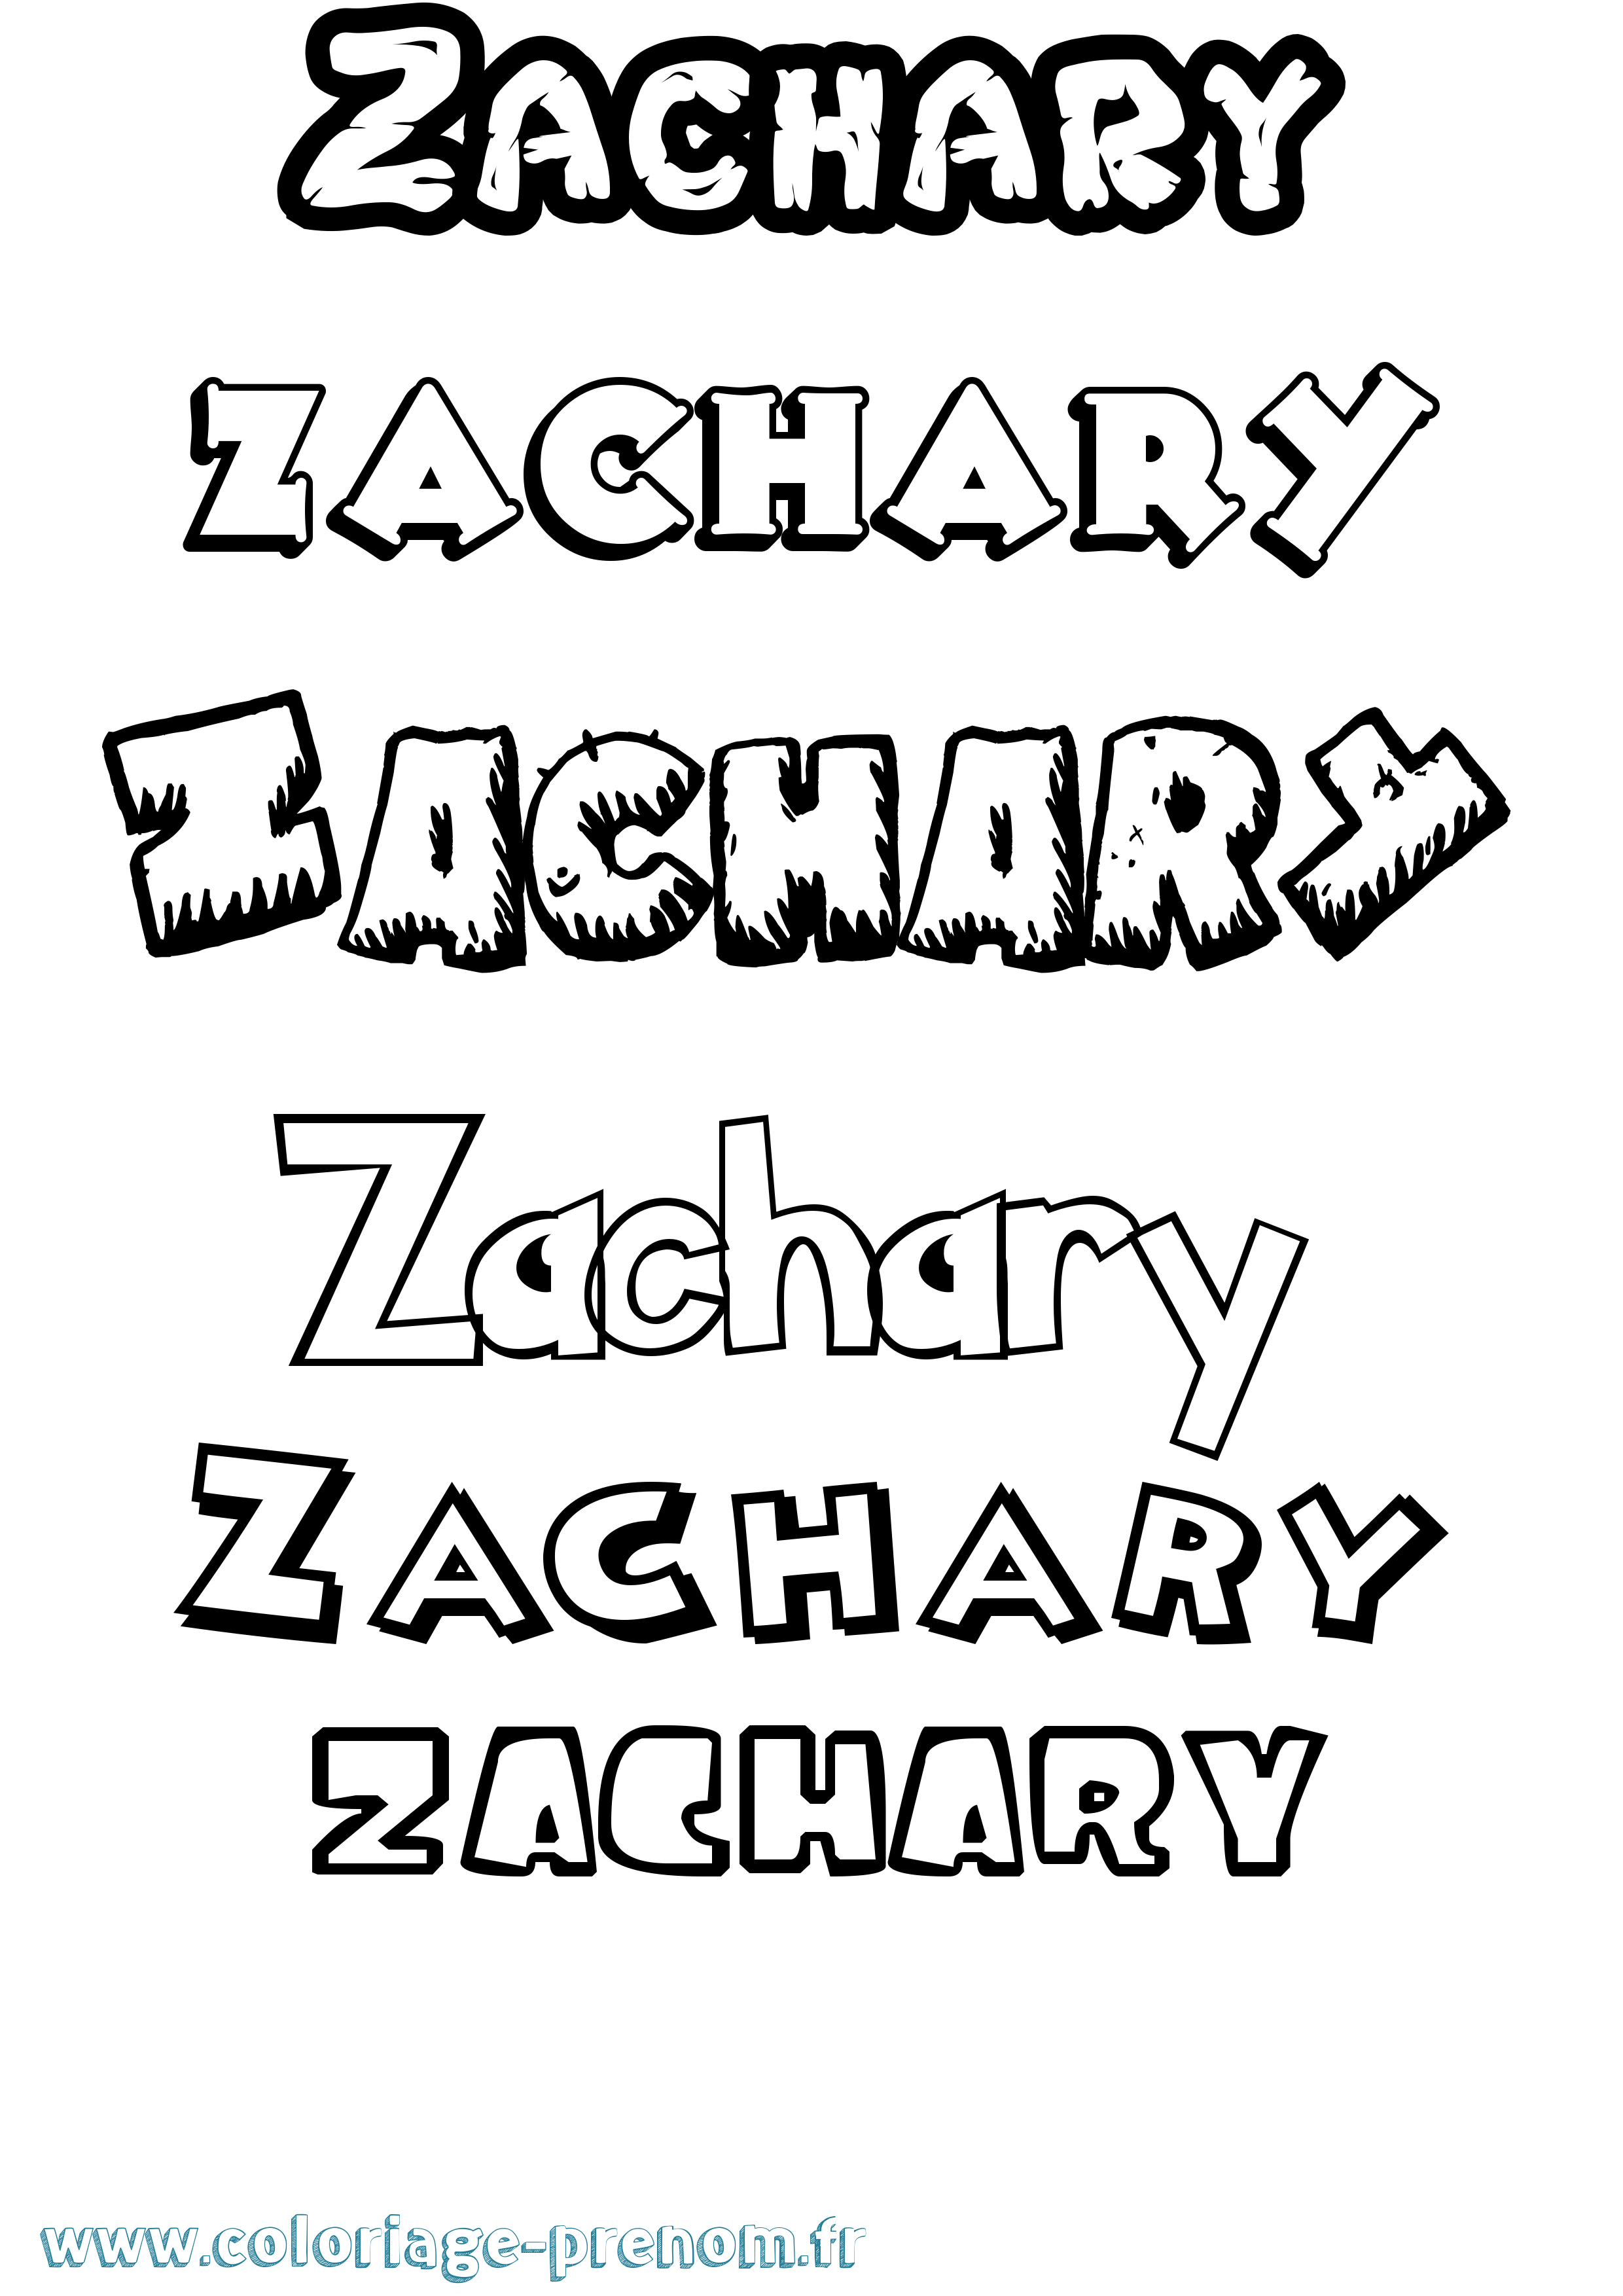 Coloriage prénom Zachary